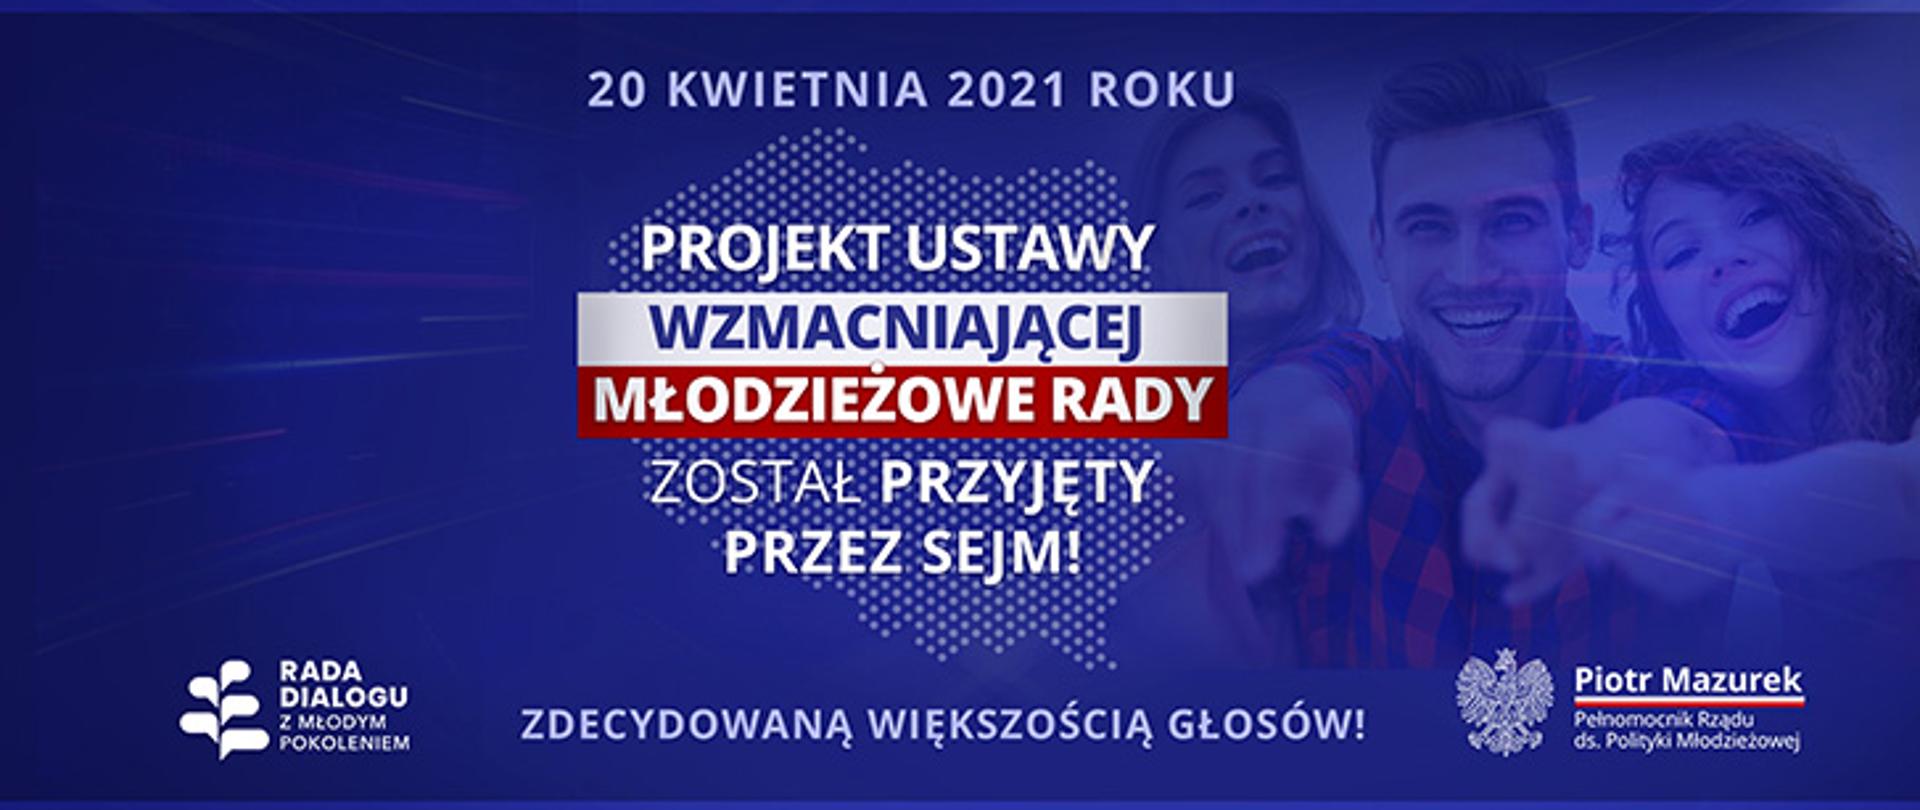 20220420_gov_PL__Rocznica_przyjecia_ustawy_wzmacniajacej_mlodziezowe_Rady_v5